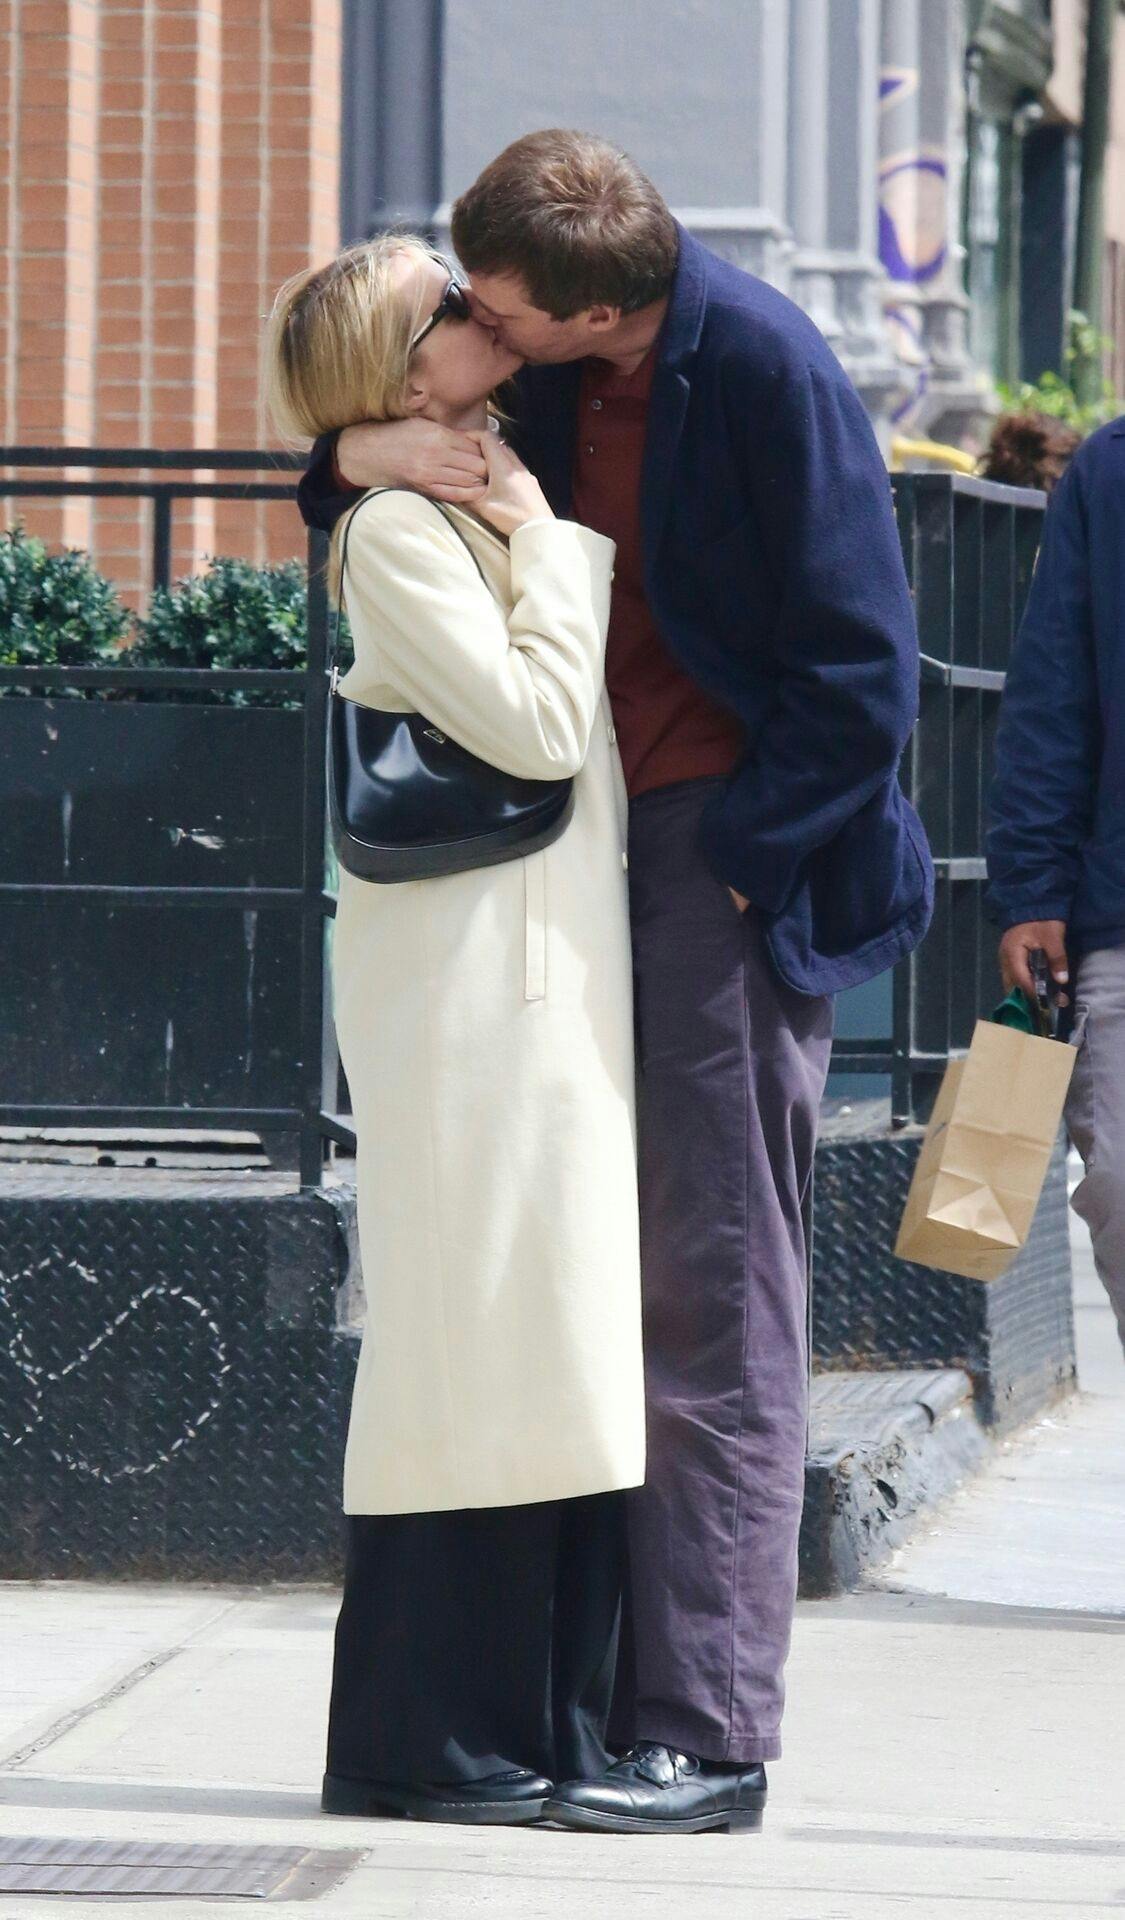 Det glade par blev spottet på gaderne i New York, og følelserne ser ud til at være brandvarme.